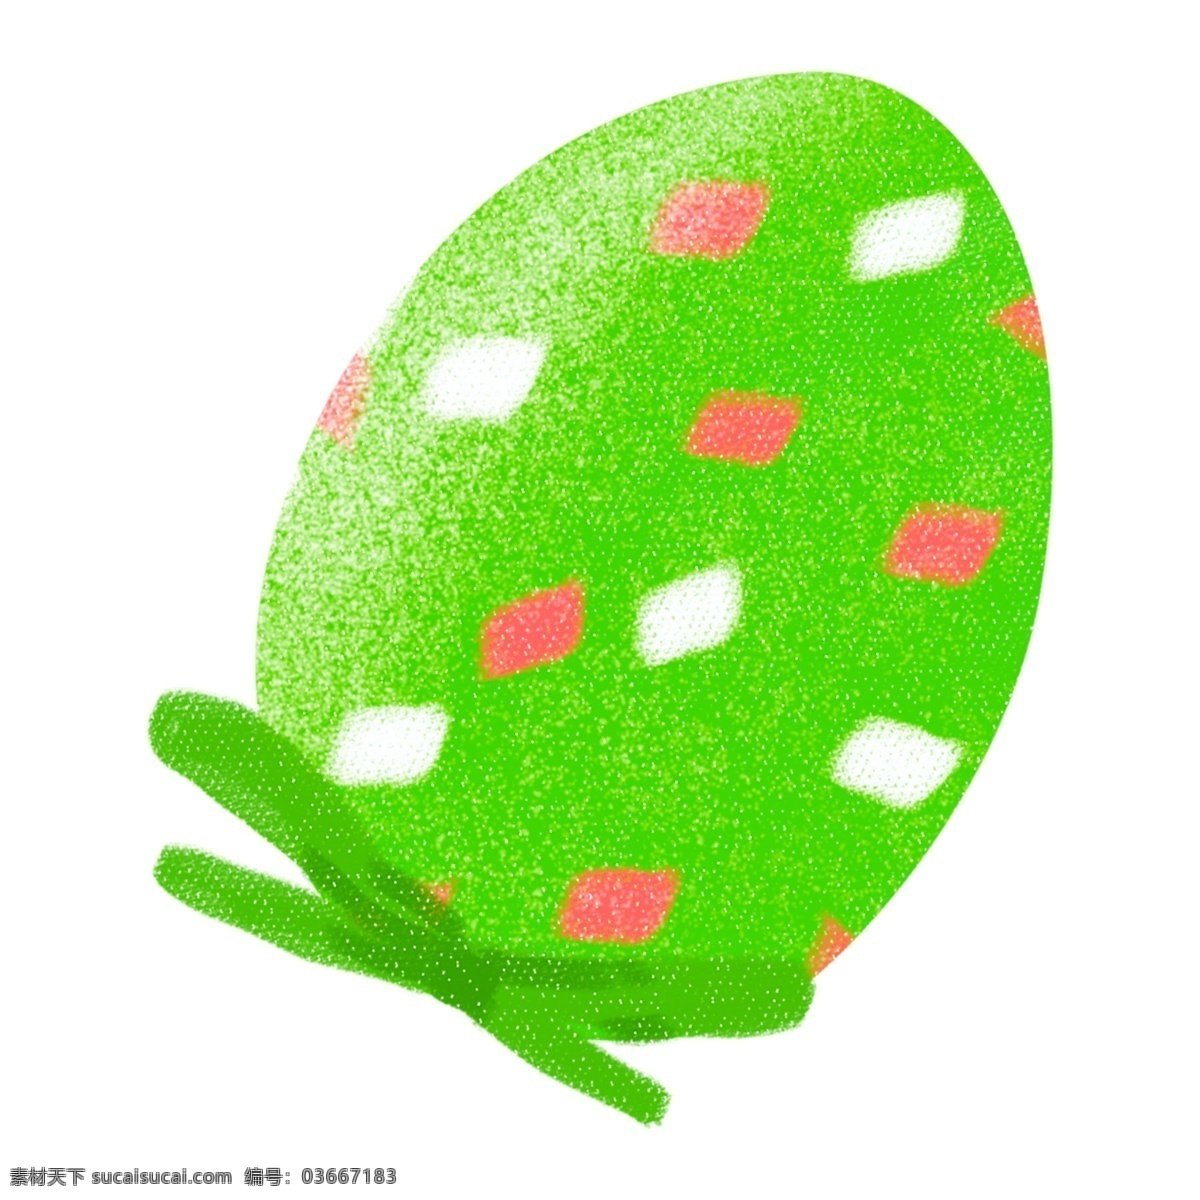 复活节 节日 彩蛋 元素 复活节元素 节日气氛 蛋 鸡蛋 彩蛋装饰 彩蛋插画